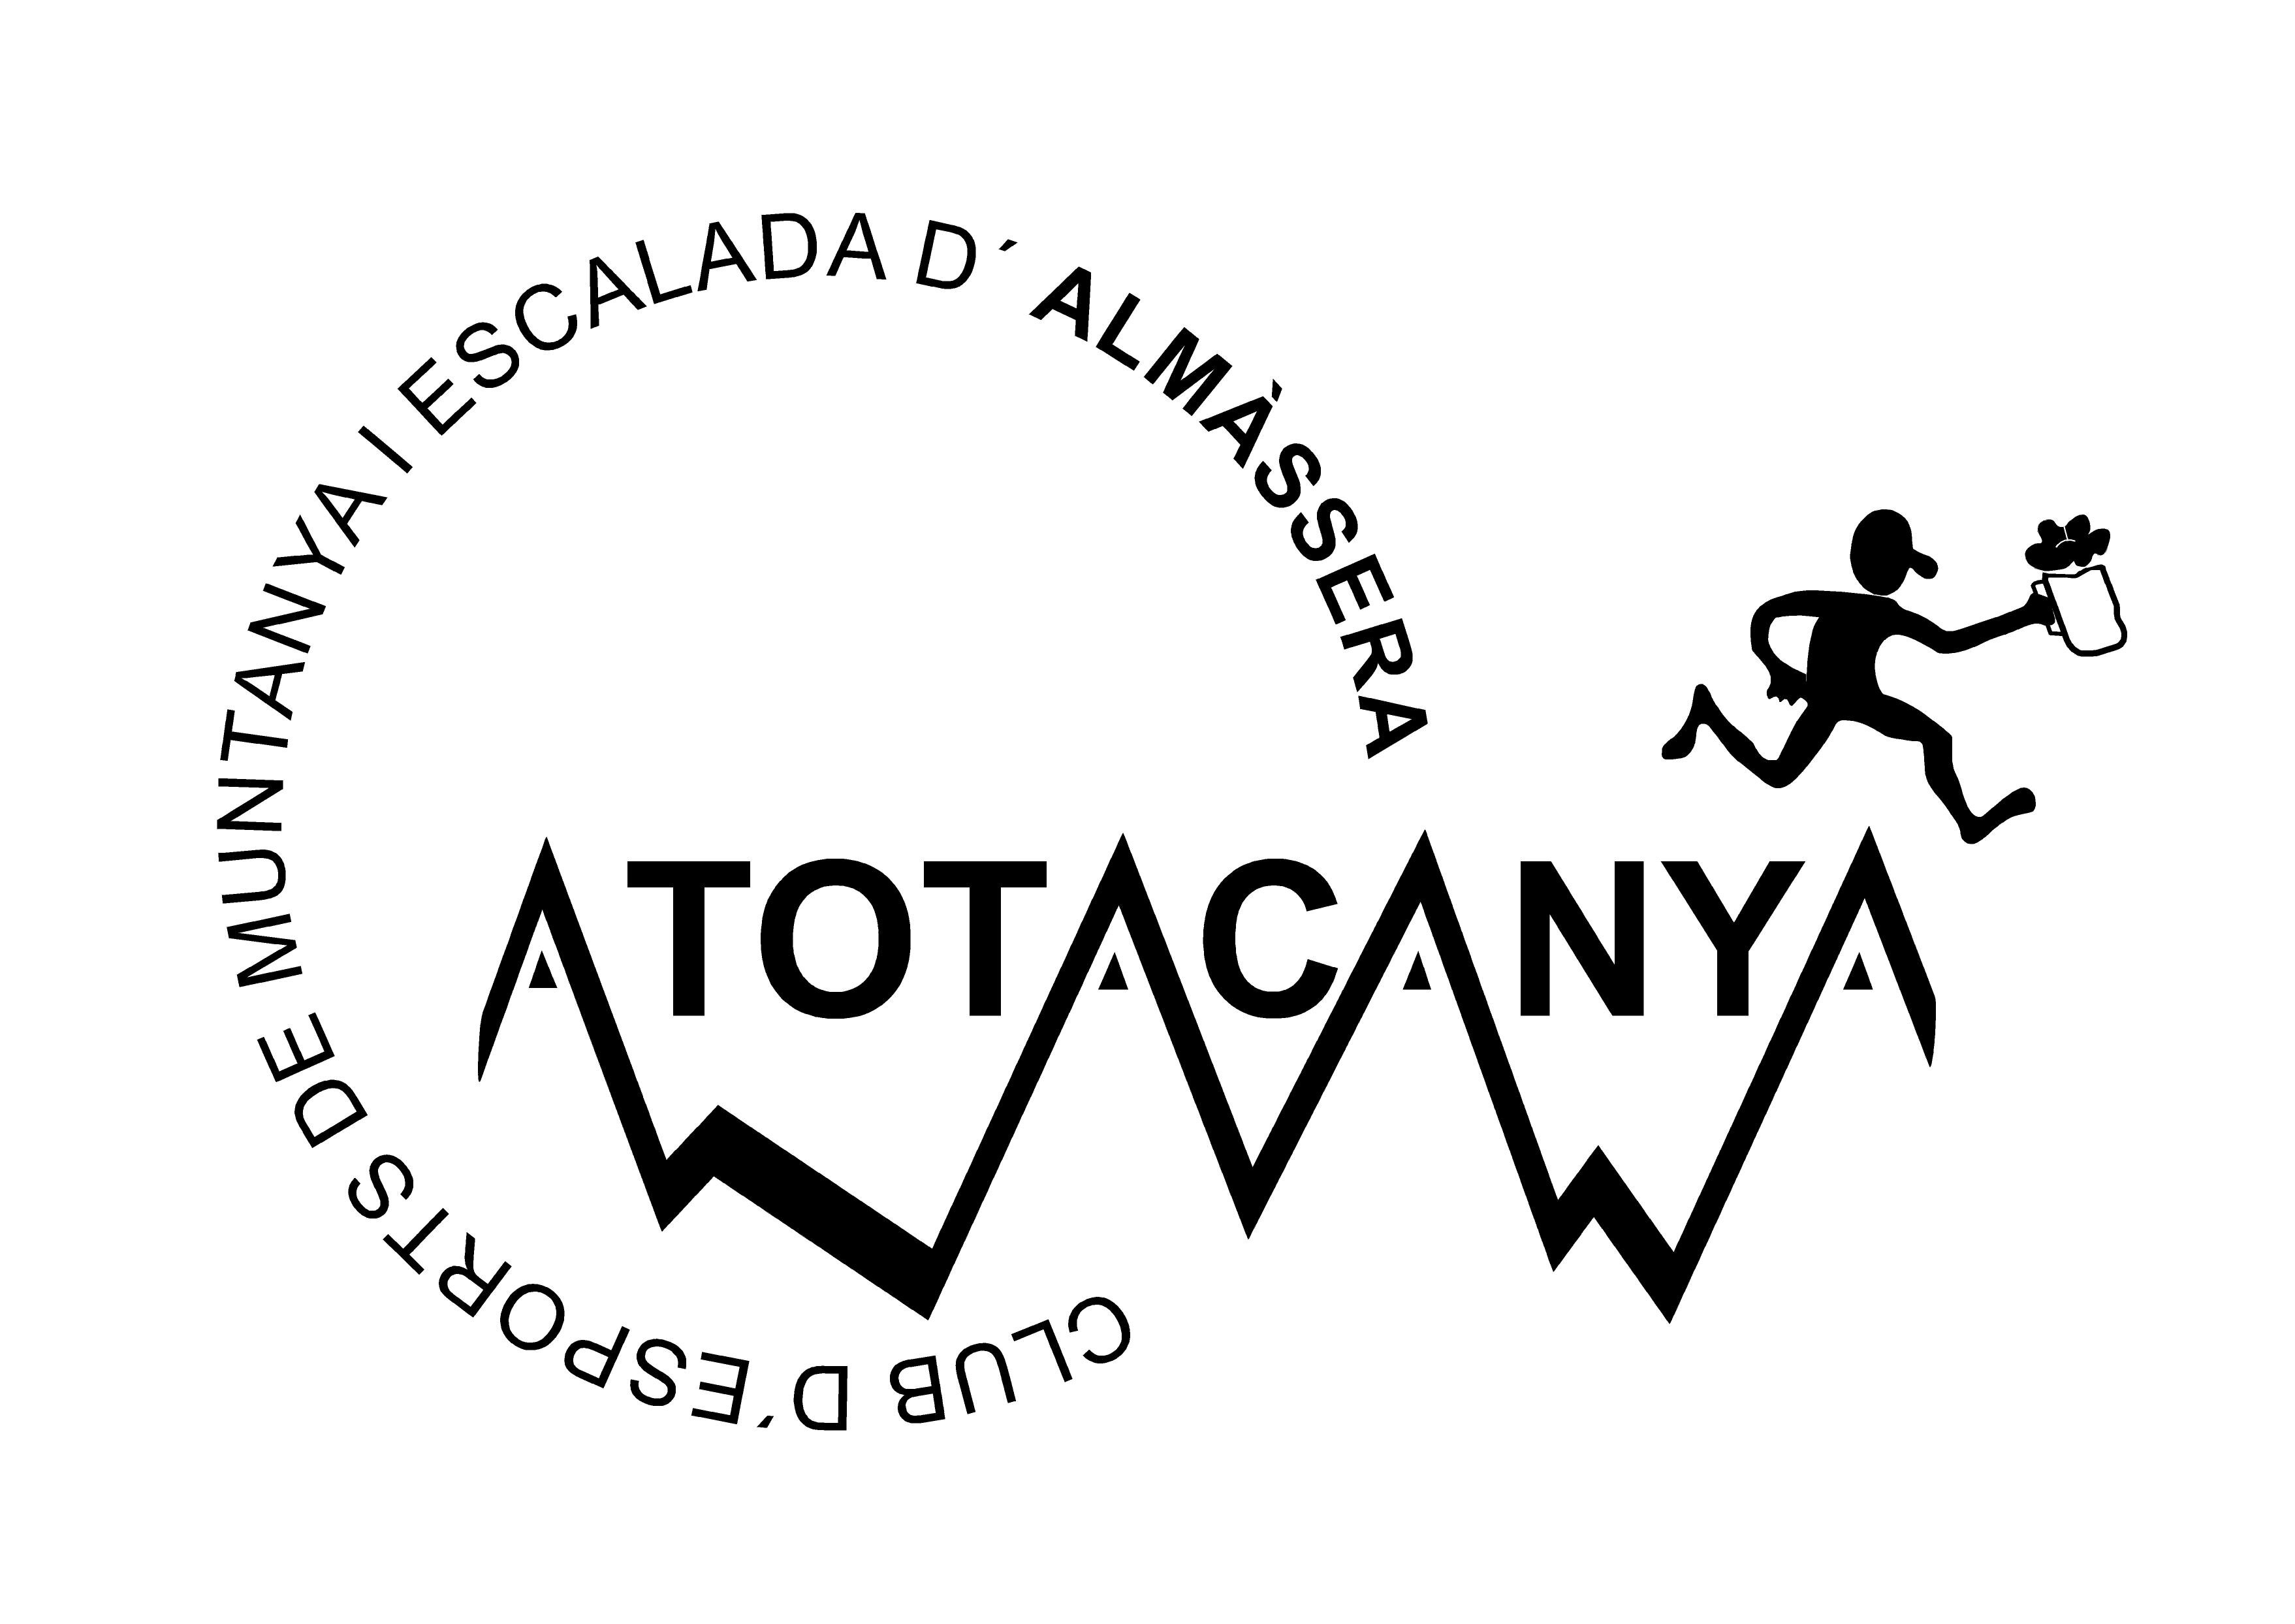 Club de montaña y grupo de amigos amantes de la carrera a pie. Creado en la localidad valenciana de Almàssera.